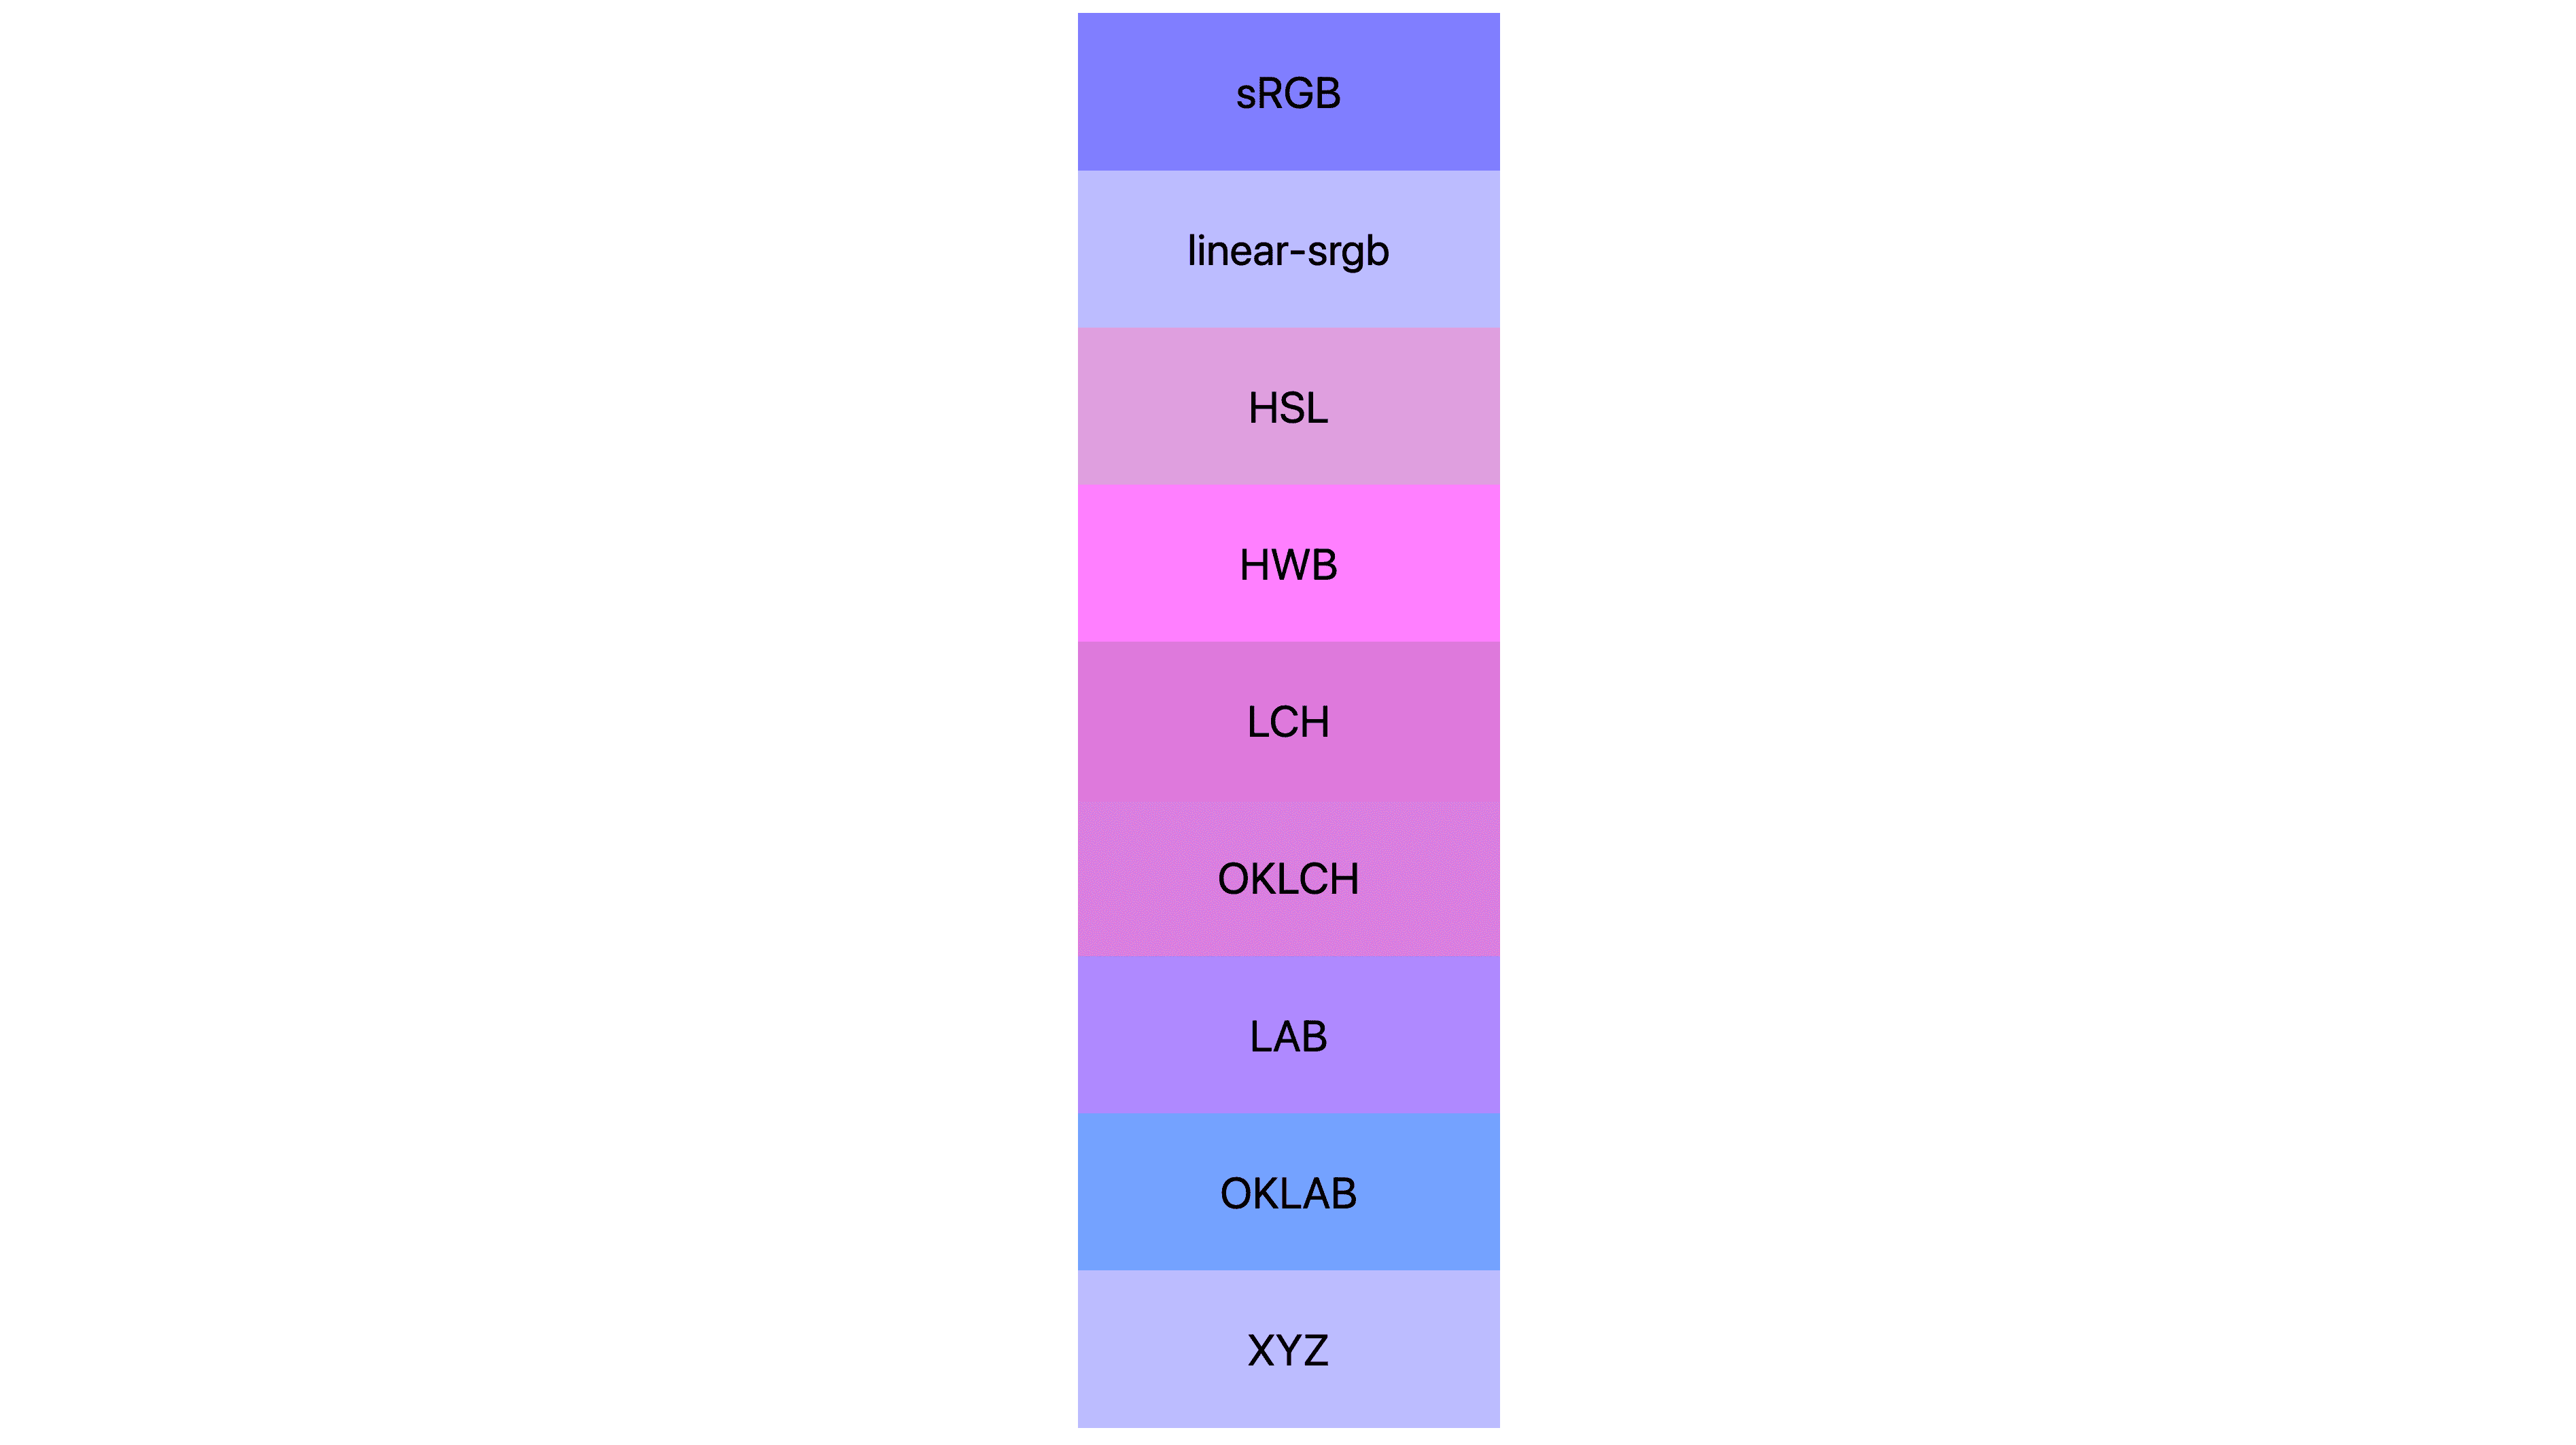 ช่องว่างสี 7 รายการ (srgb, linear-srgb, lch, oklch, lab, oklab, xyz) แต่ละรายการแสดงผลลัพธ์ที่ต่างกัน หลายสีเป็นสีชมพูหรือม่วง แต่บางดวงยังคงเป็นสีน้ำเงิน